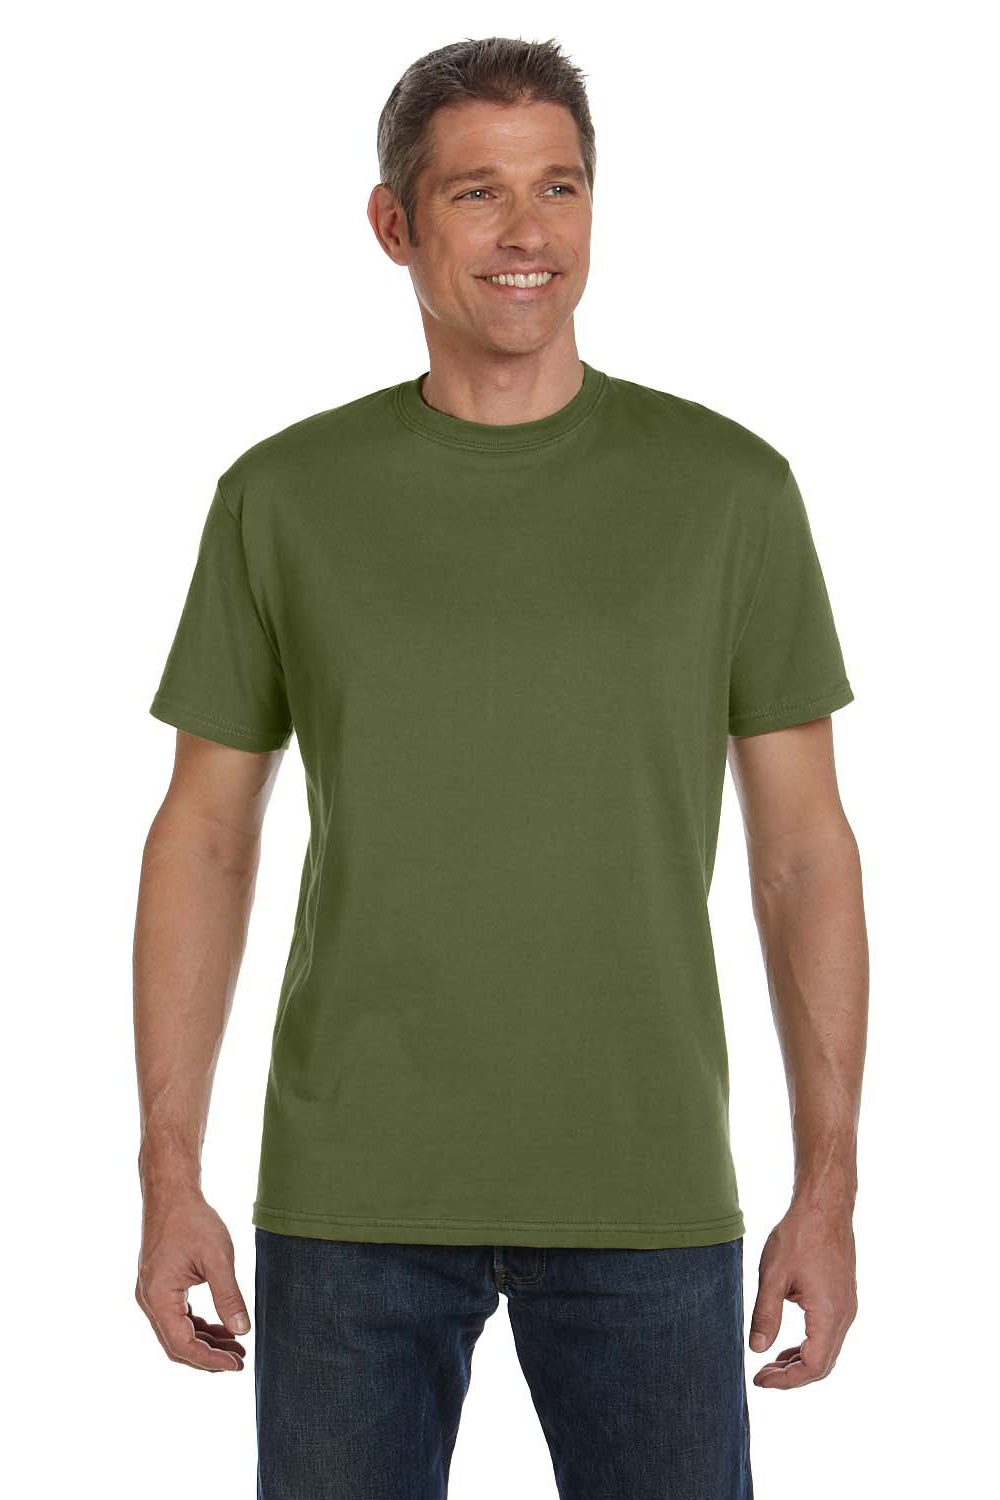 Econscious EC1000 Mens Short Sleeve Crewneck T-Shirt Olive Green Front